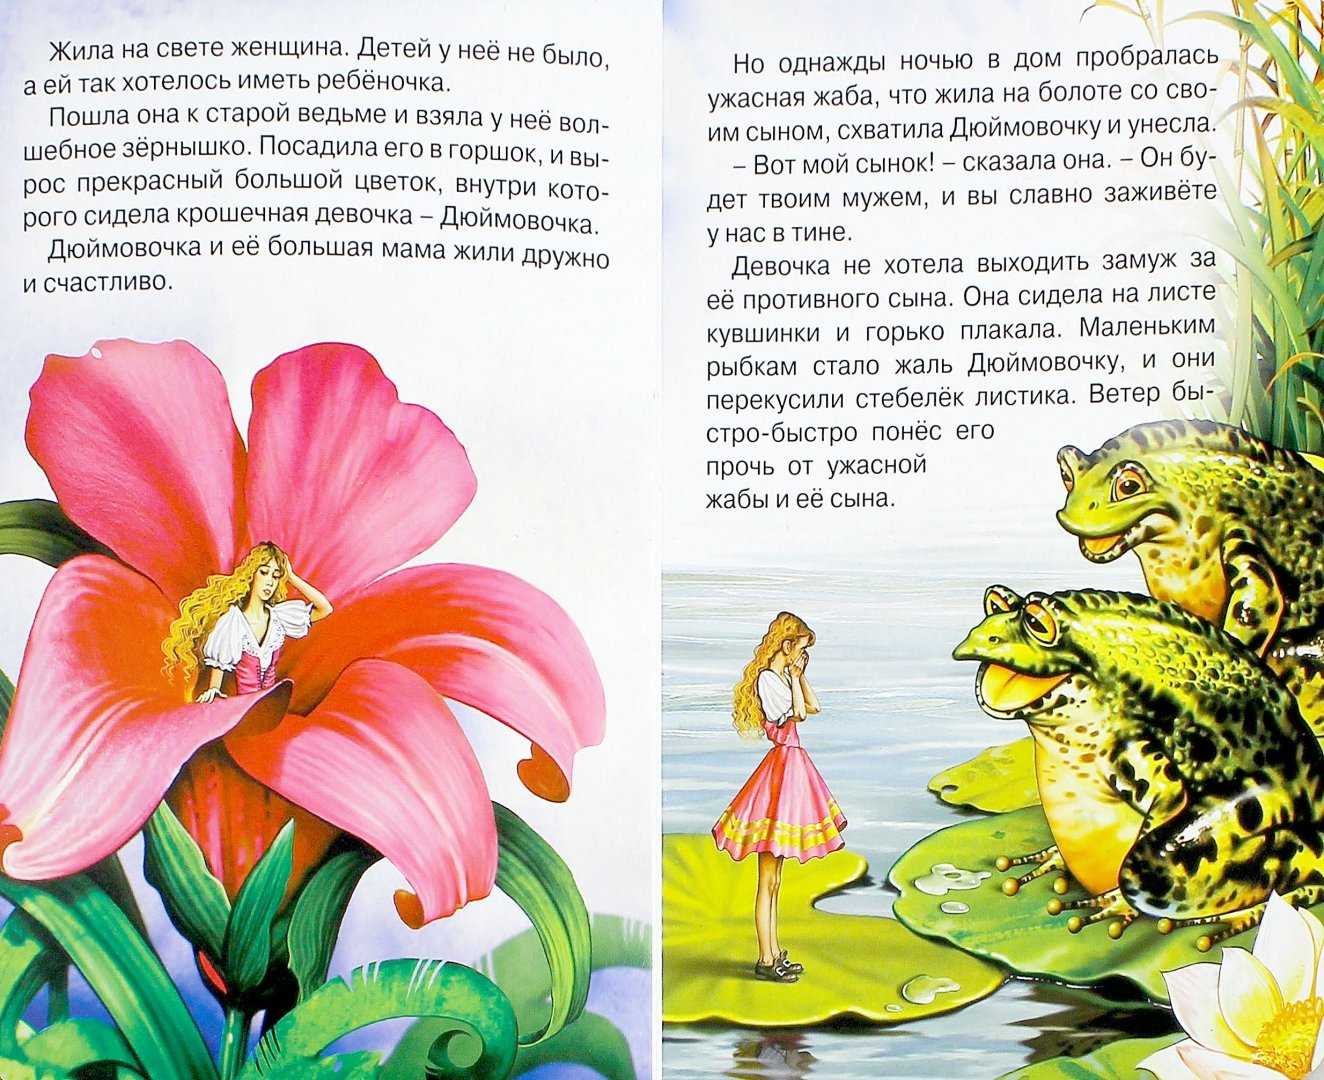 Дюймовочка - биография маленькой девочки, главные герои и факты - 24сми